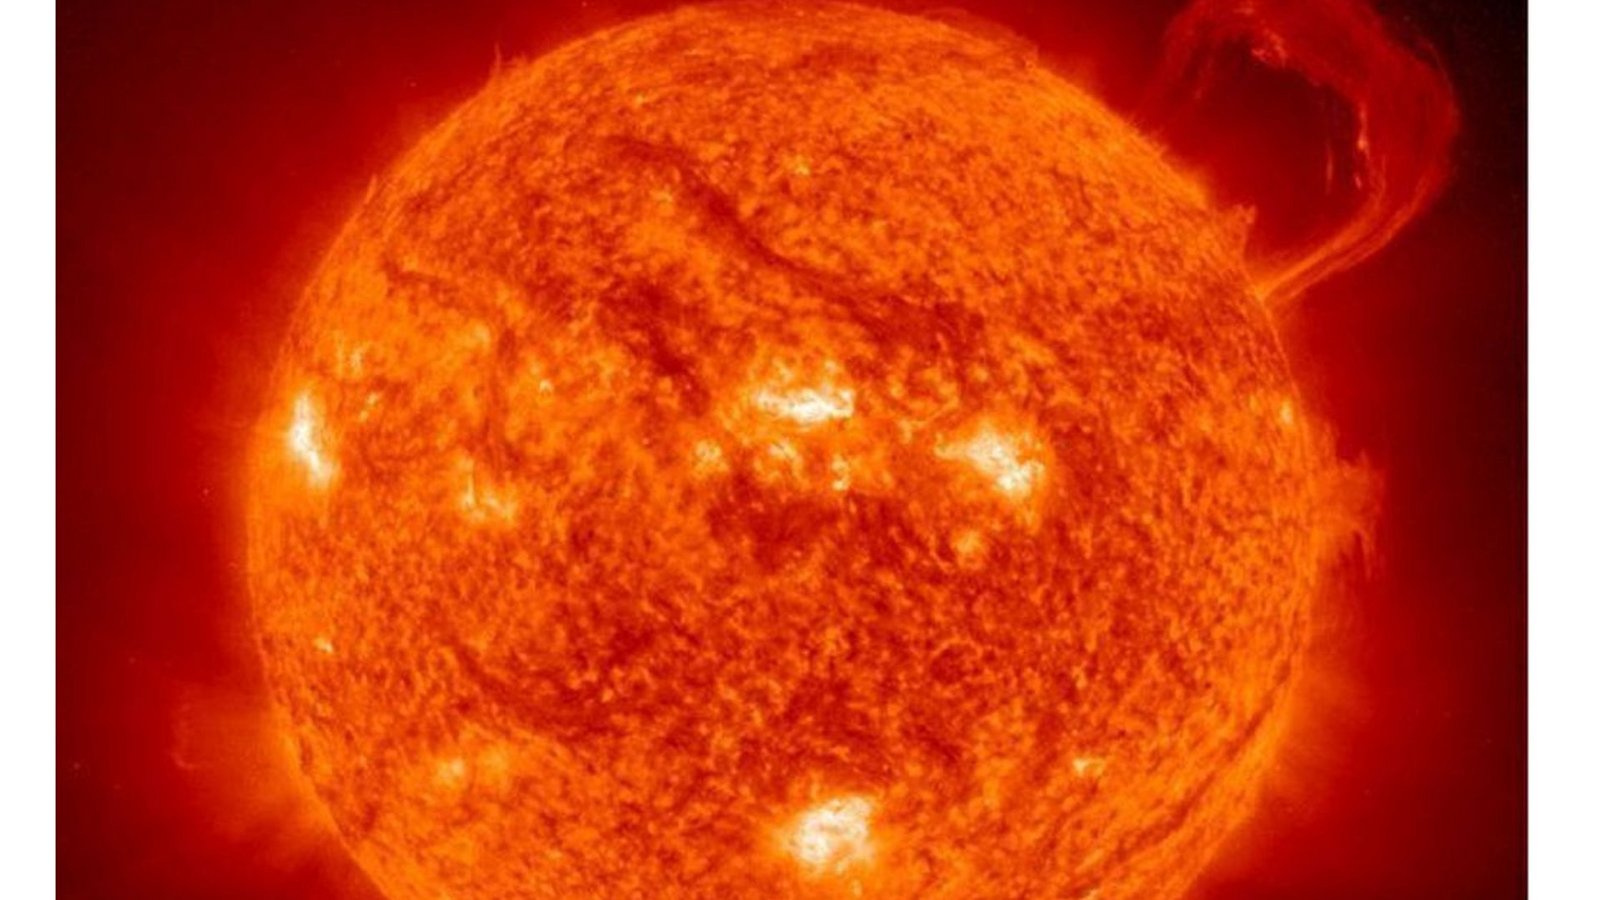 SONNENINFERNO: Auch Planeten und Sternen ist ein Ende beschieden, wenngleich ihr Ableben ungleich dramatischer abläuft als beim Menschen. Auch die Sonne wird in einigen Milliarden Jahren ihre Brennstoffvorräte komplett aufgezehrt haben und sich zu einem Feuerball aufblähen, der das 256-fache des heutigen Radius von 1,4 Millionen Kilometern ausmacht. Sie wird zum Roten Riesen, einem Himmelskörper von gigantischen unvorstellbaren Ausmaßen und extrem hoher Temperatur, der Venus, Merkur und am Ende die Erde vernichtet. Nach Berechnungen von Astronomen soll dieser Rote Riese in 7,6 Milliarden Jahren zu einem Weißen Zwerg mutieren – den Überresten ausgebrannter Sterne. Die Menschheit wird davon nichts mehr mitbekommen. In spätestens einer Milliarde Jahre wird die Erde zum Lavaplaneten, auf dem nur noch wenige  Mikroorganismen überleben. Fazit Sonneninferno: Angesichts der zeitlichen Dimensionen ist der solare Crash reines Science-Fiction-Theater. Sollten sich zukünftige Geschlechter nicht rechtzeitig mit Raumschiffen in Sicherheit bringen, wird die Menschheit das Sonneninferno nicht überleben. Bis dahin hat sie noch genügend Zeit, um sich durch Kriege, Seuchen und Umweltzerstörung das eigene Grab zu schaufeln.Foto: dpa